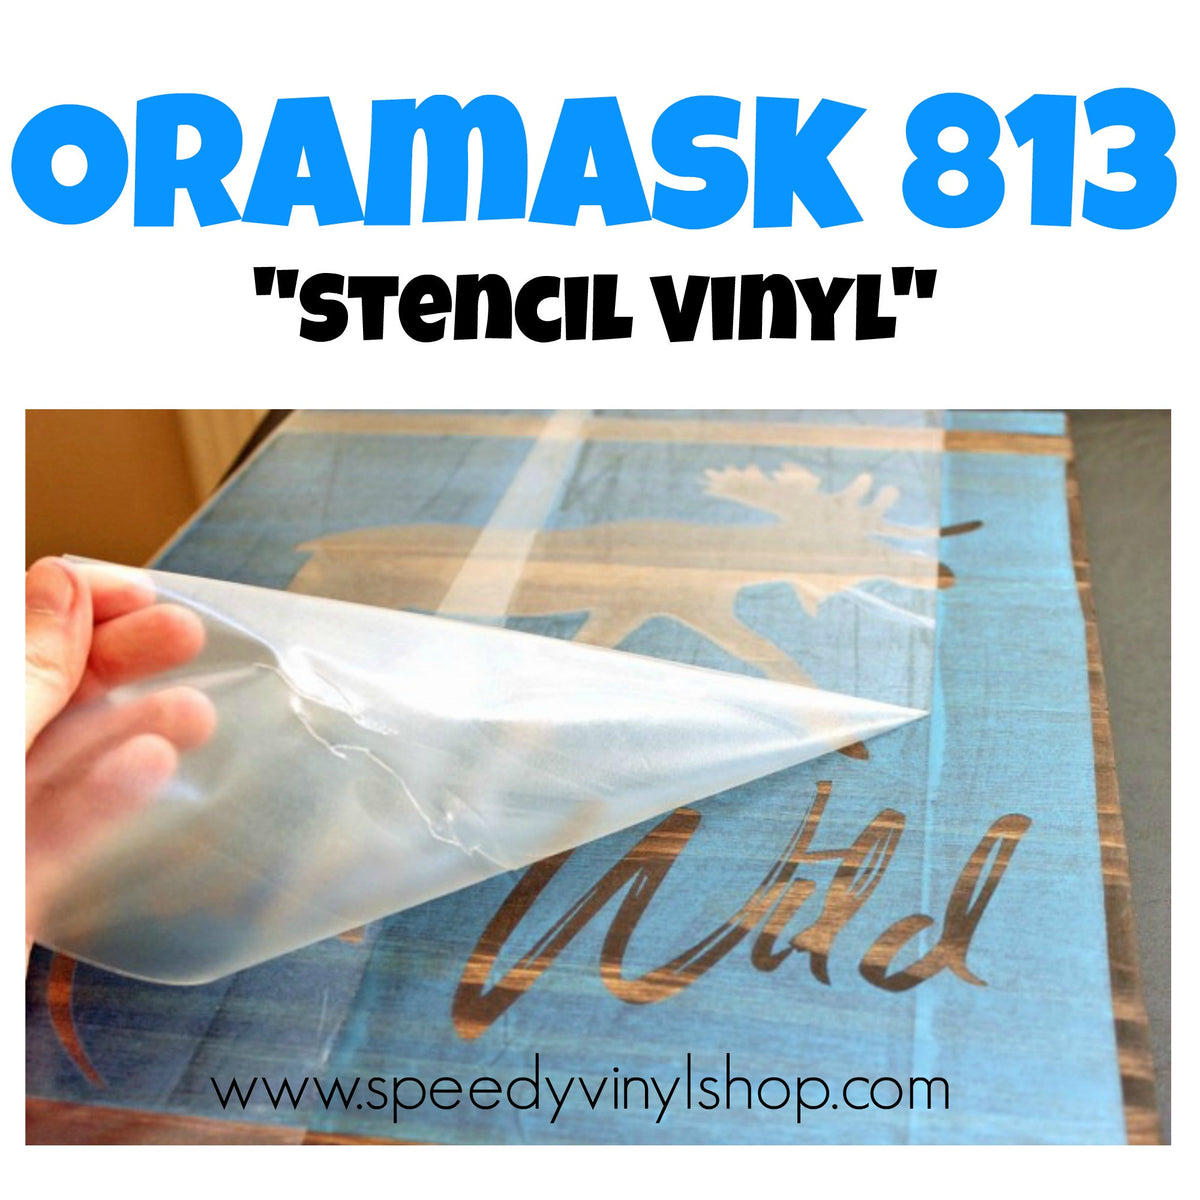 Oramask 813 – Speedy Vinyl